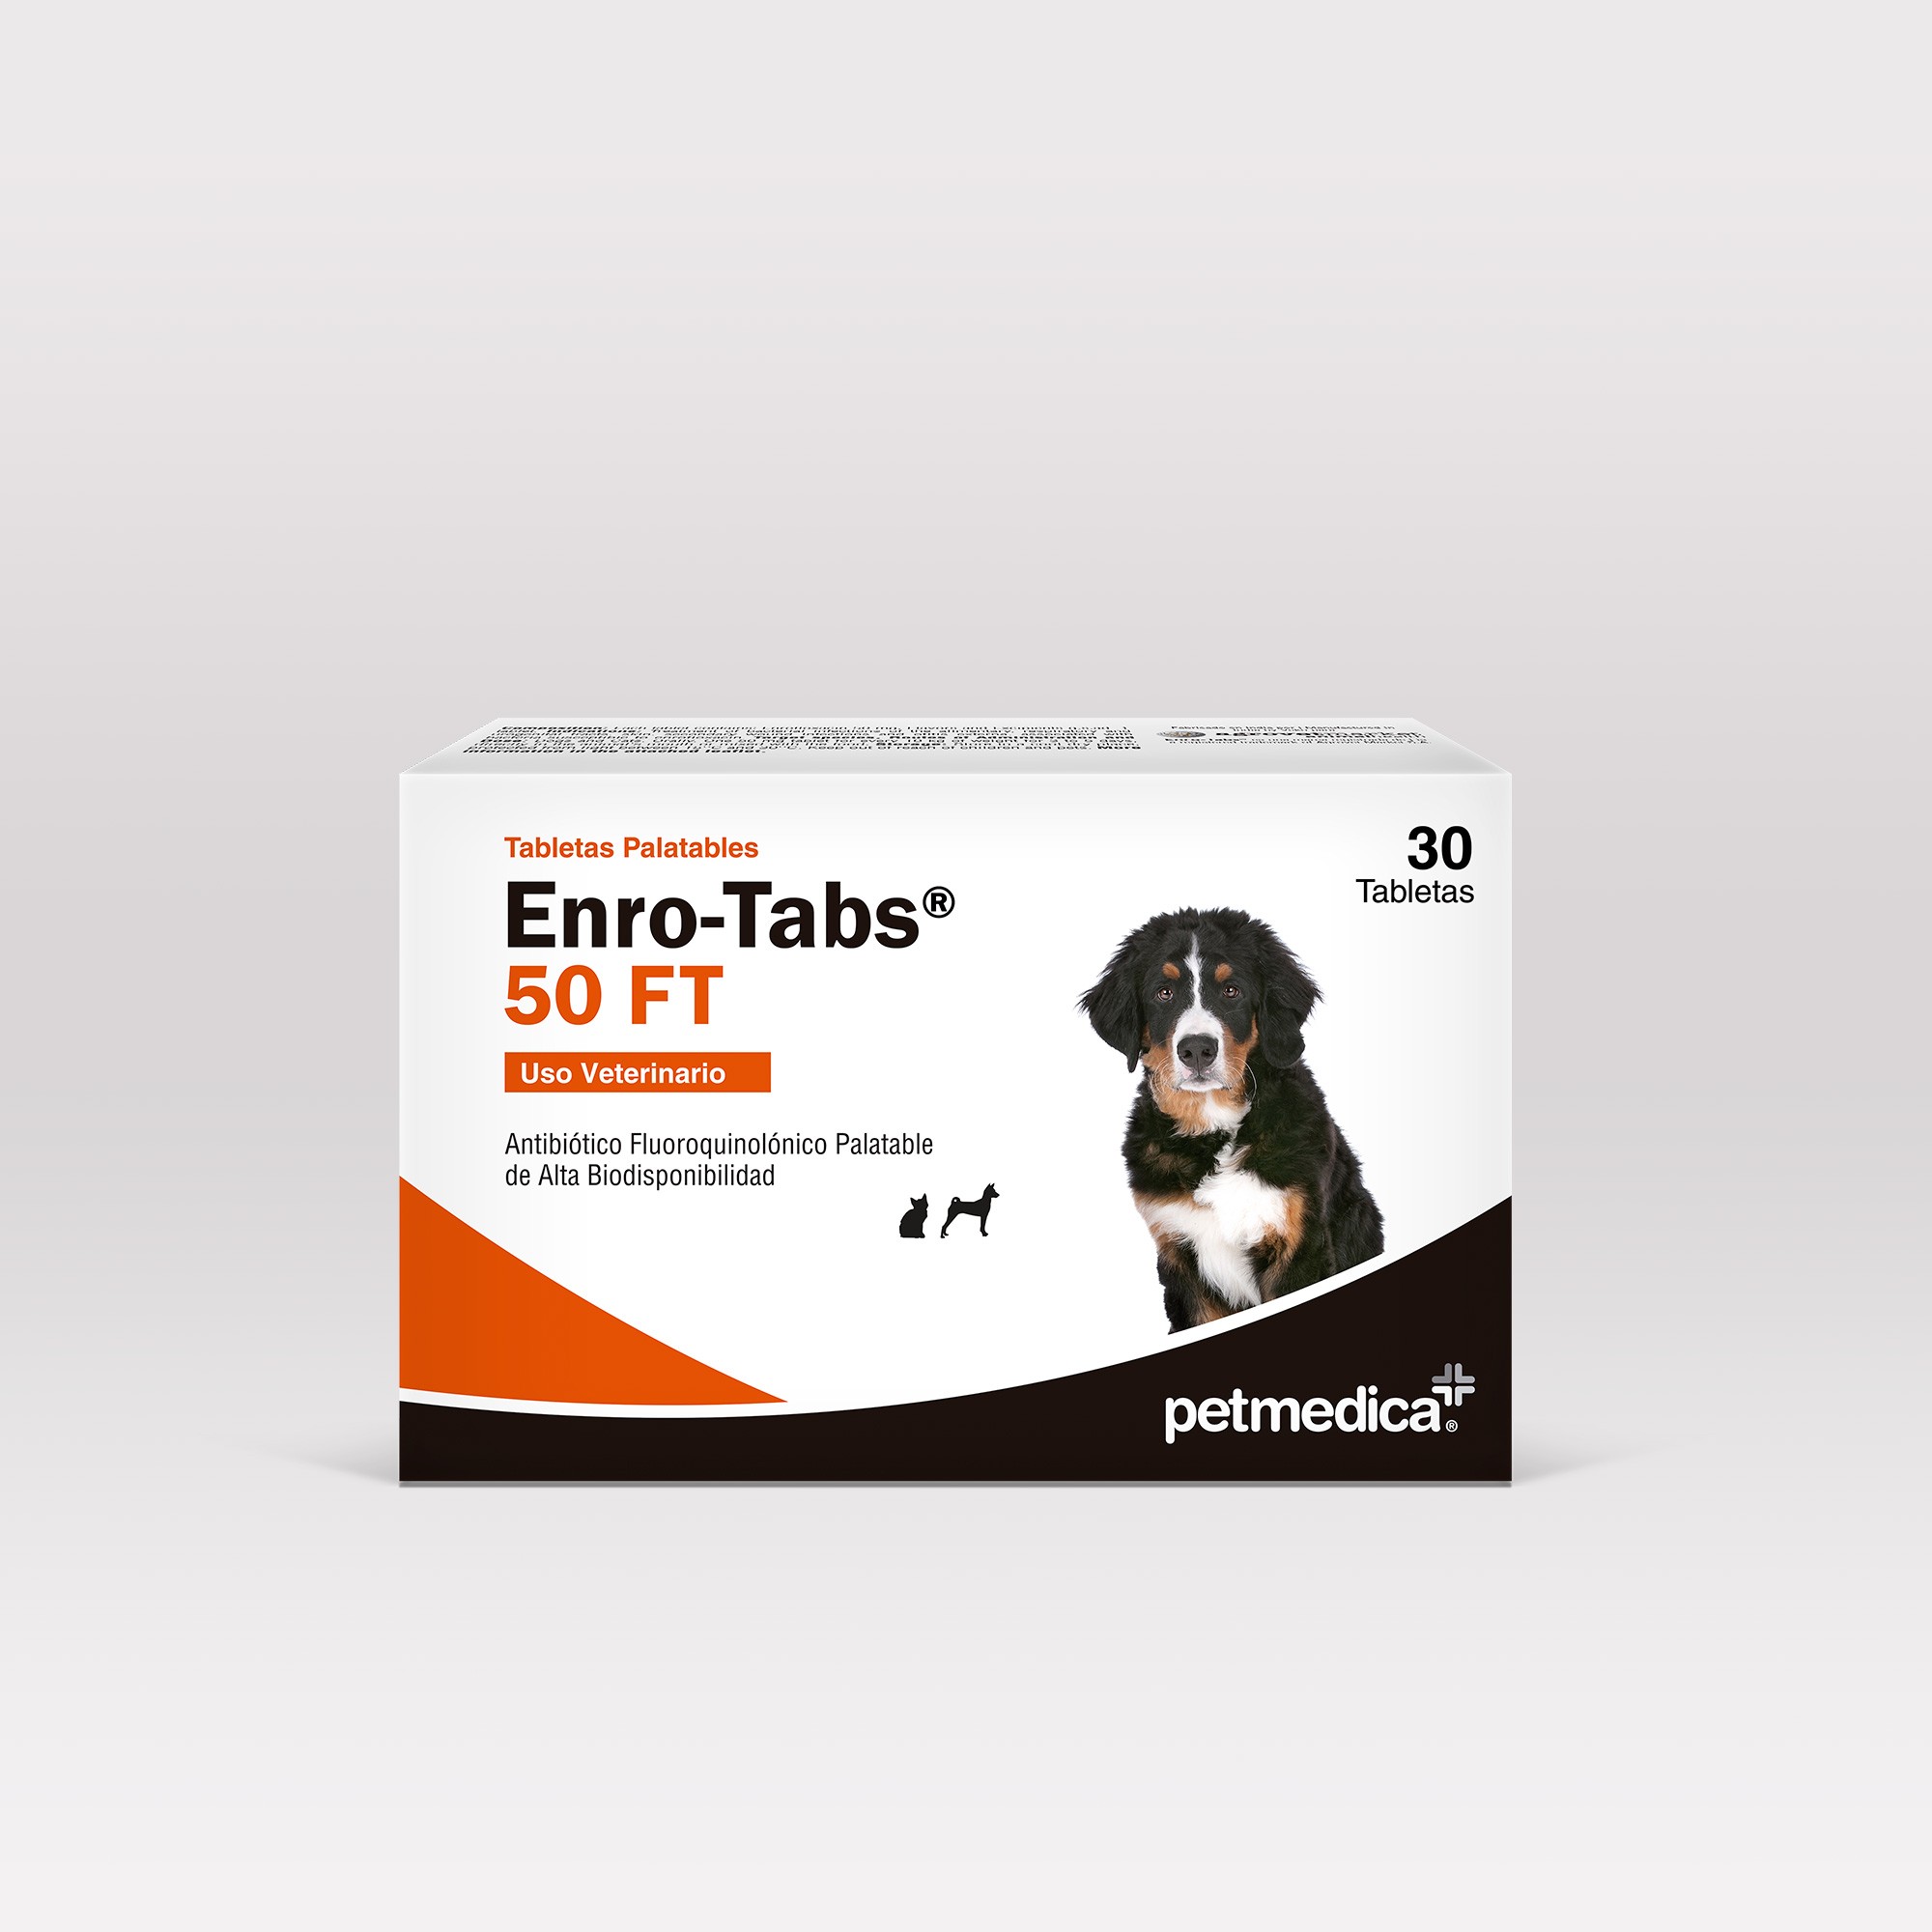 Enro-Tabs® 50 FT